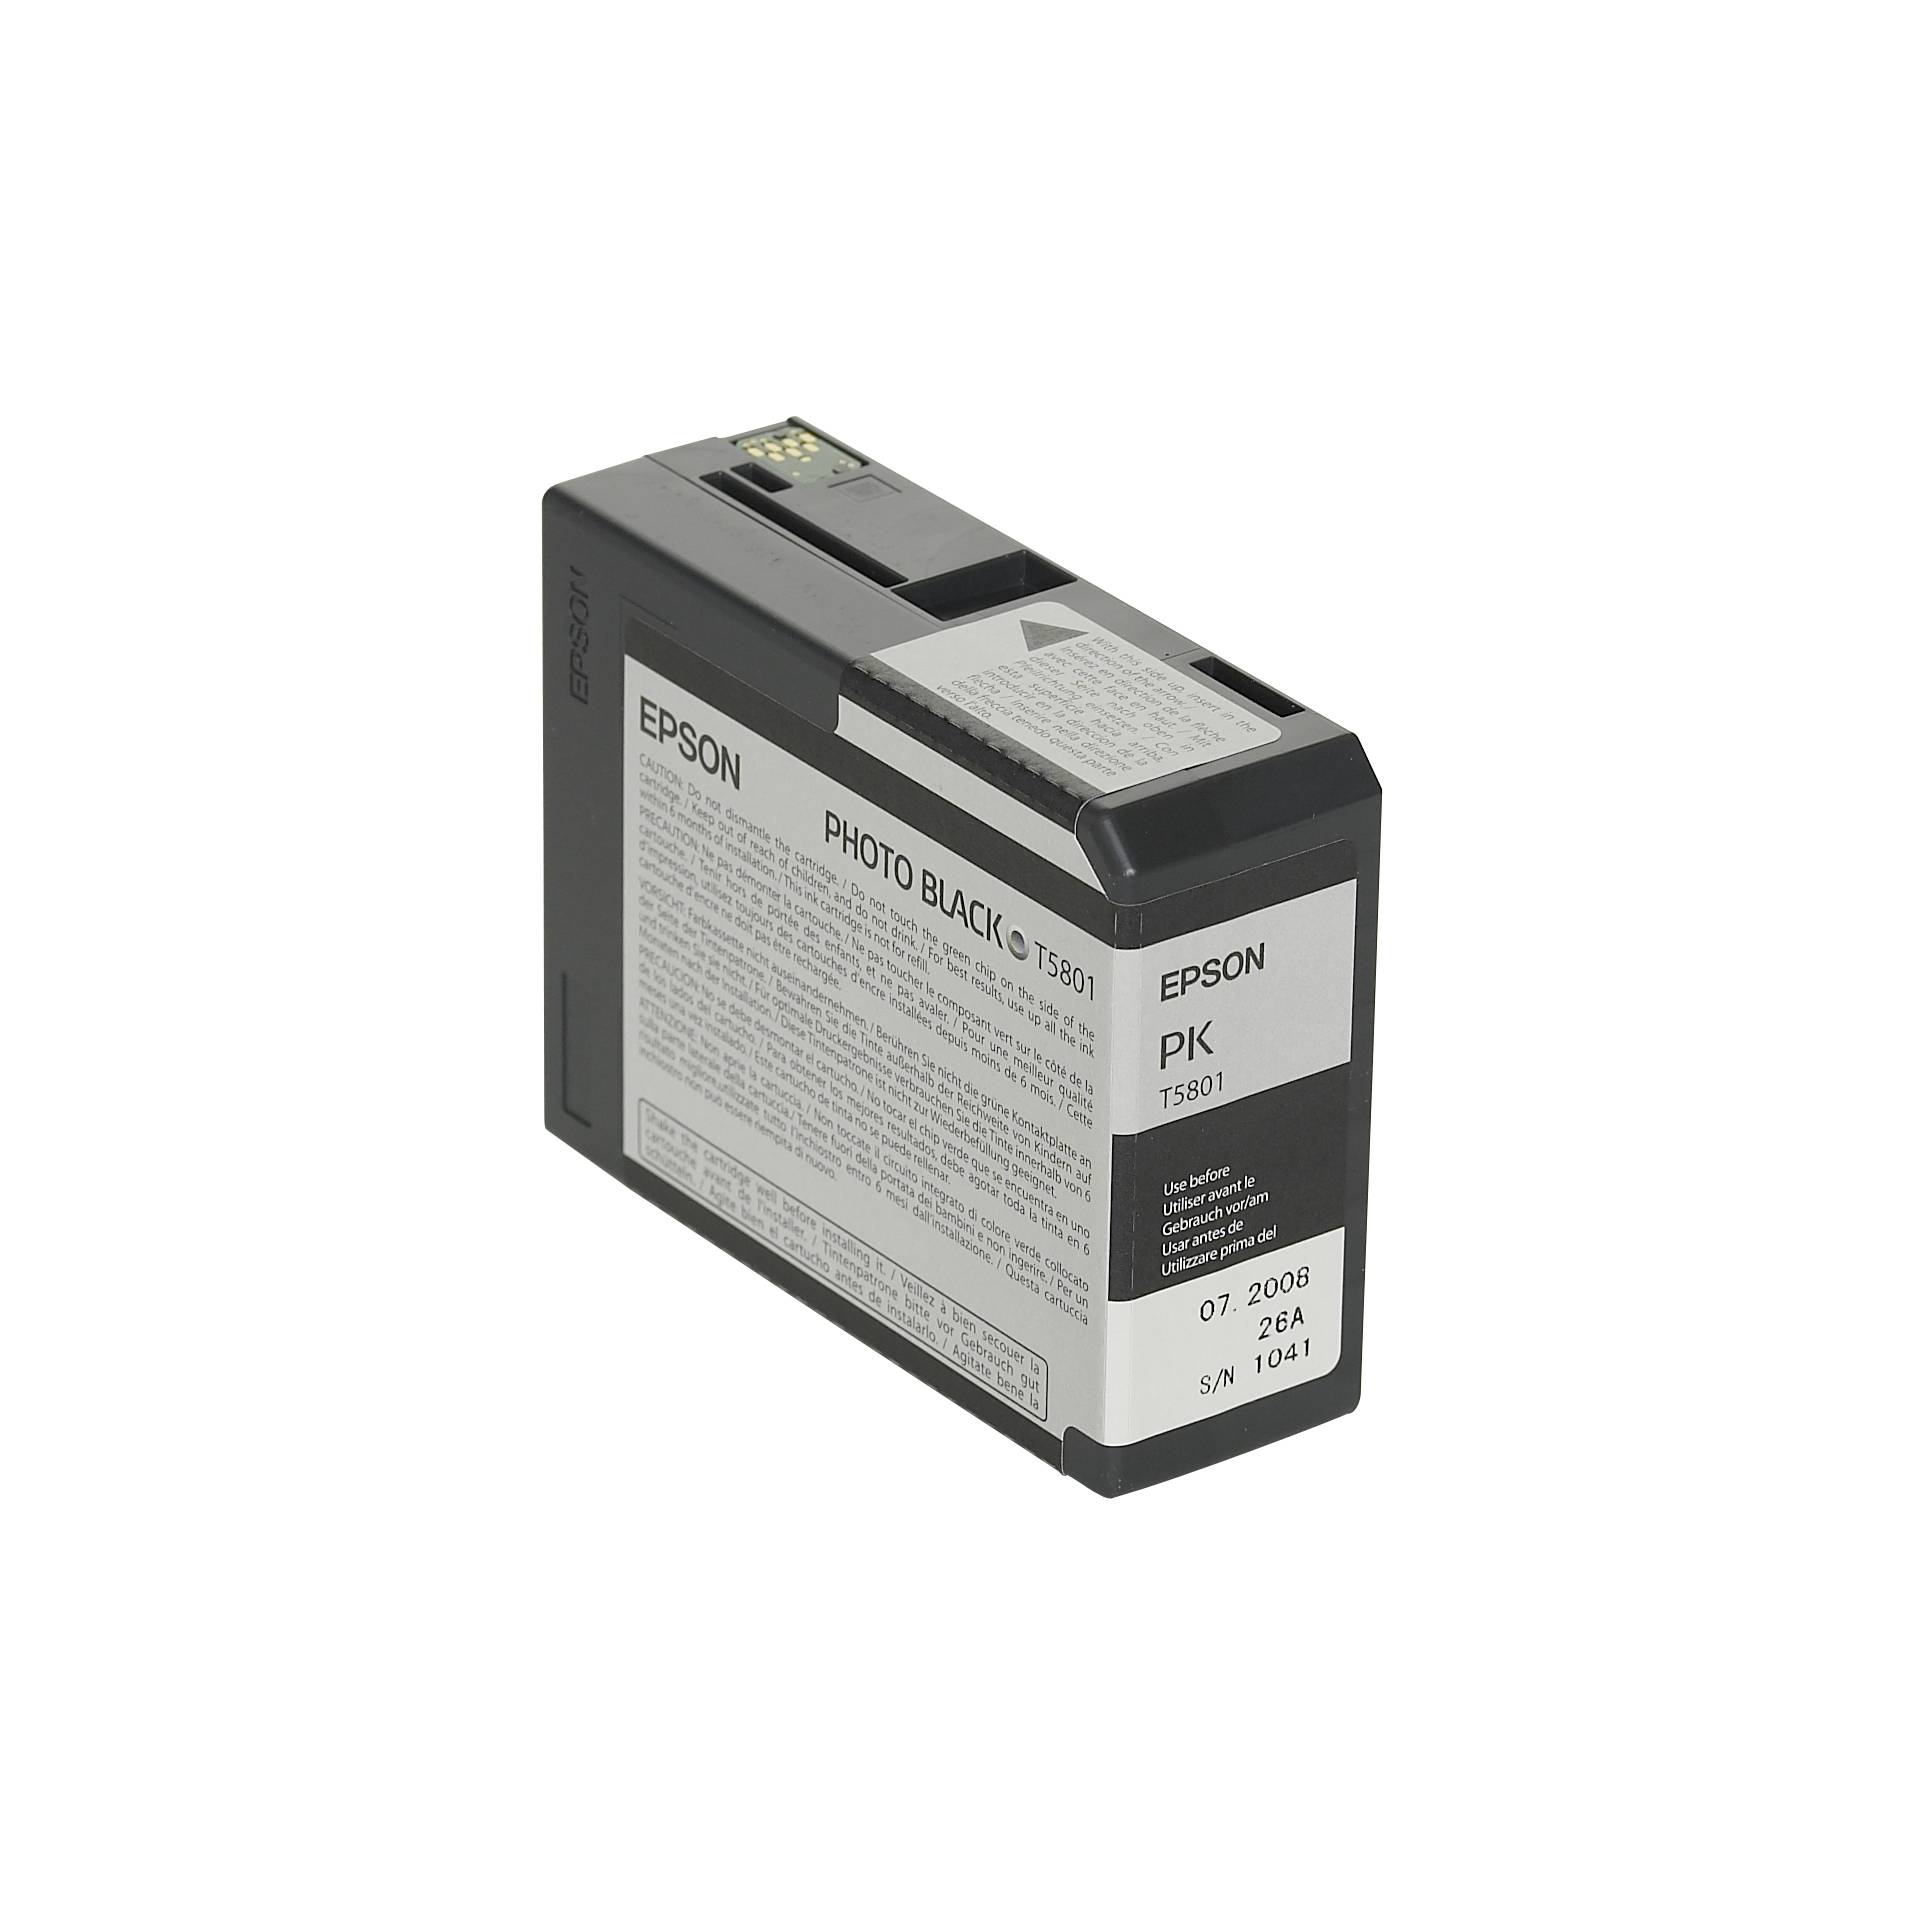 Epson cartuccia     foto  nero T 580  80 ml              T 5